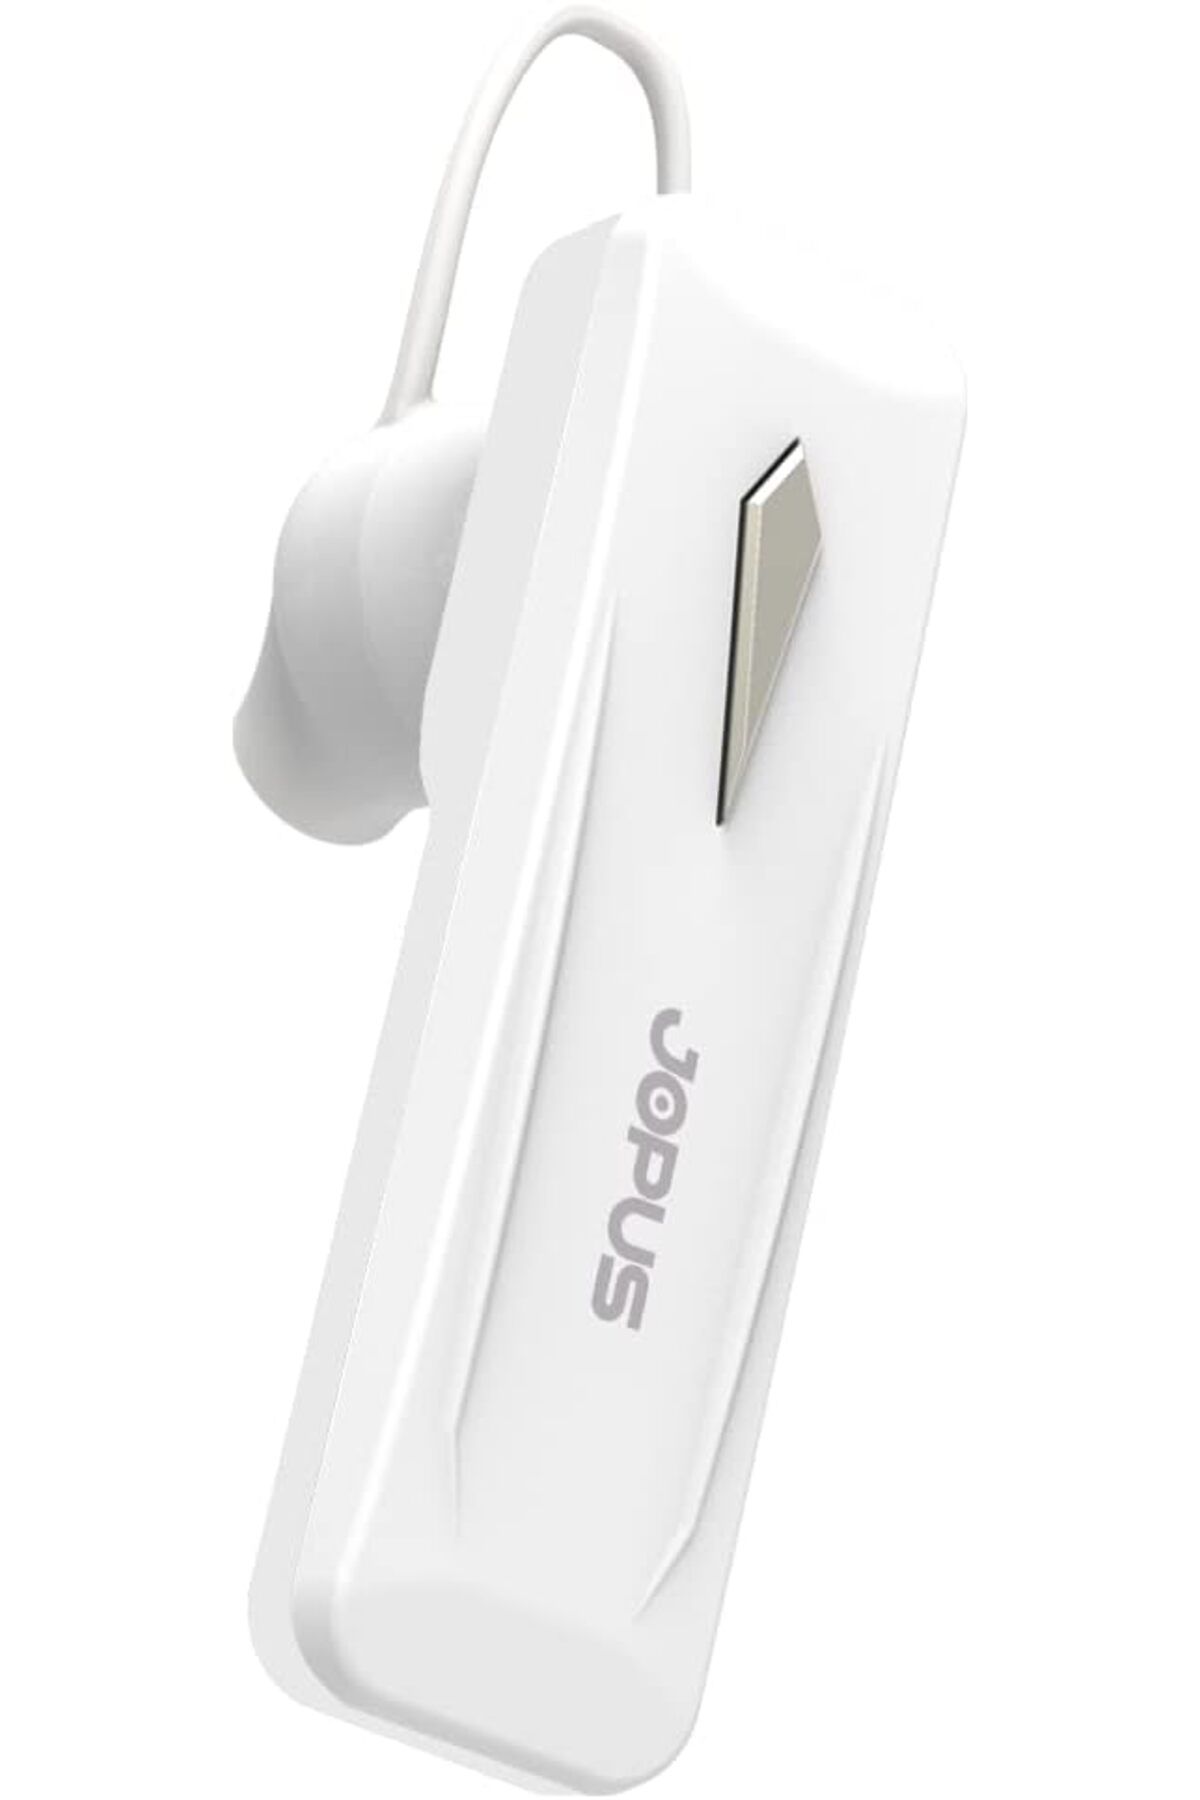 SepetBudur K8 Tekli Kulak Üstü Mini Boy Bluetooth Kulaklık, Beyaz